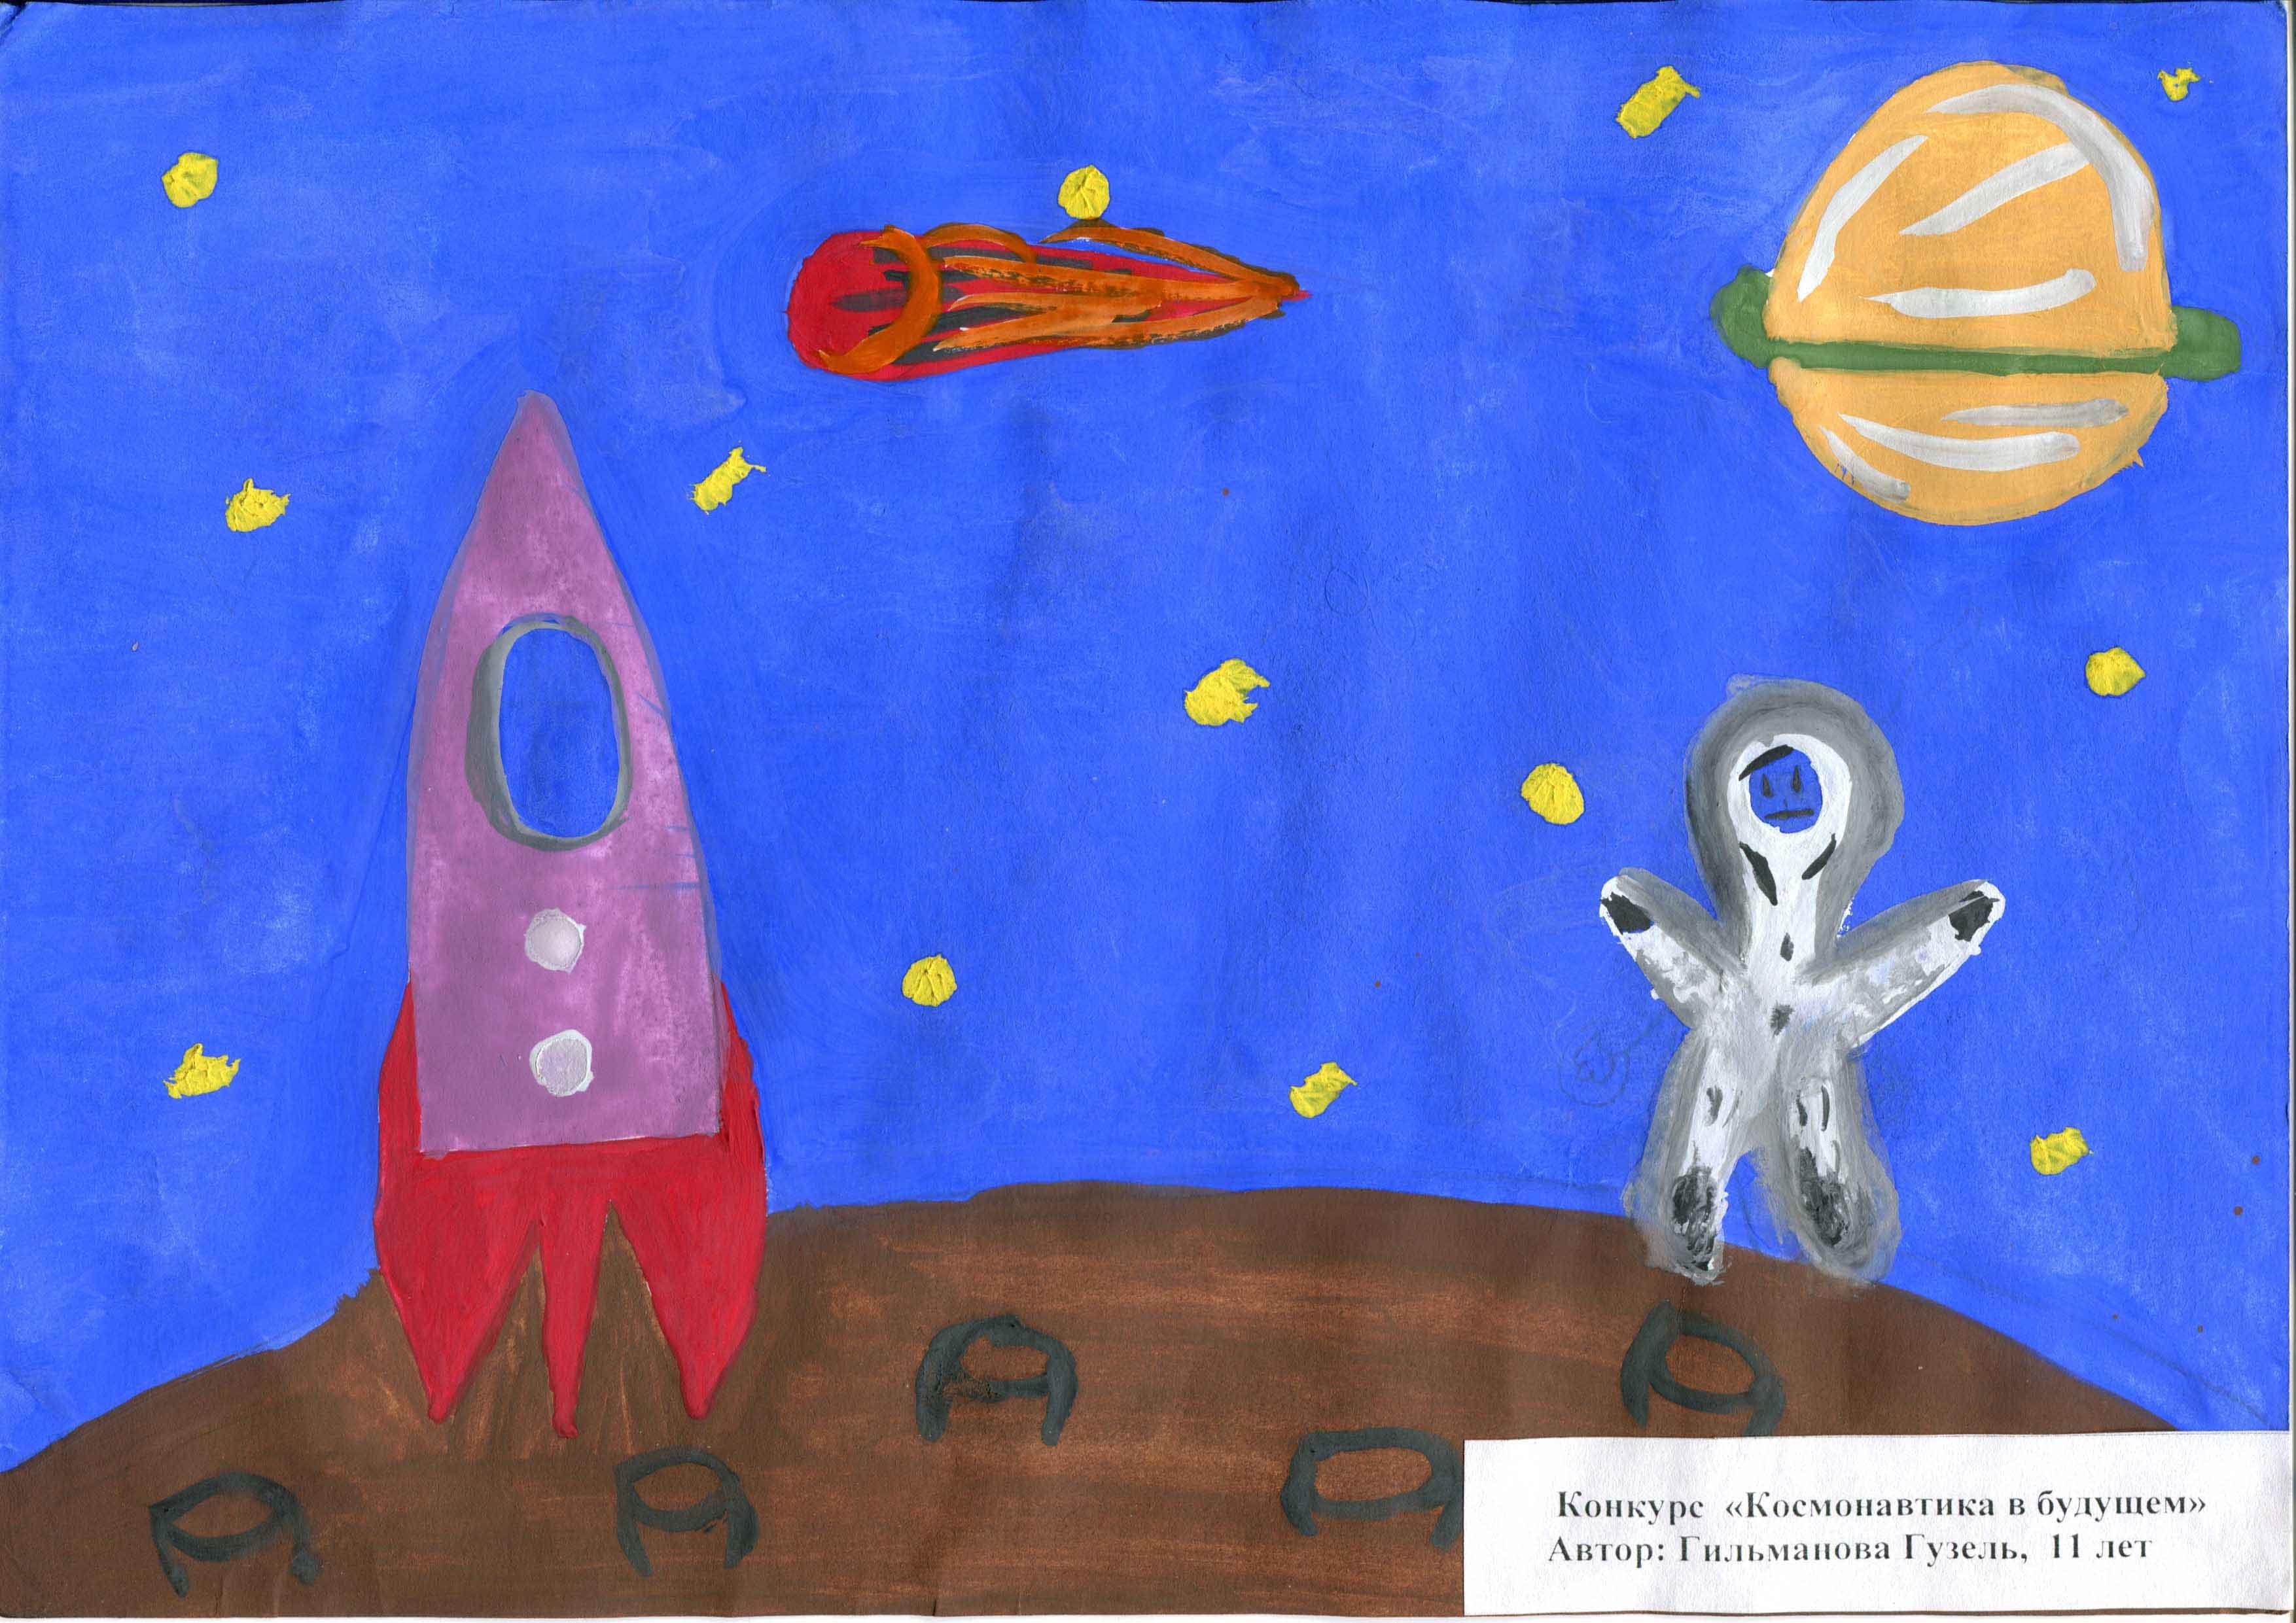 Название рисунка ко дню космонавтики. Рисунок ко Дню космонавтики. Конкурс рисунков ко Дню космонавтики. Название рисунков ко Дню космонавтики. Рисунок ко Дню космонавтики в детский сад.